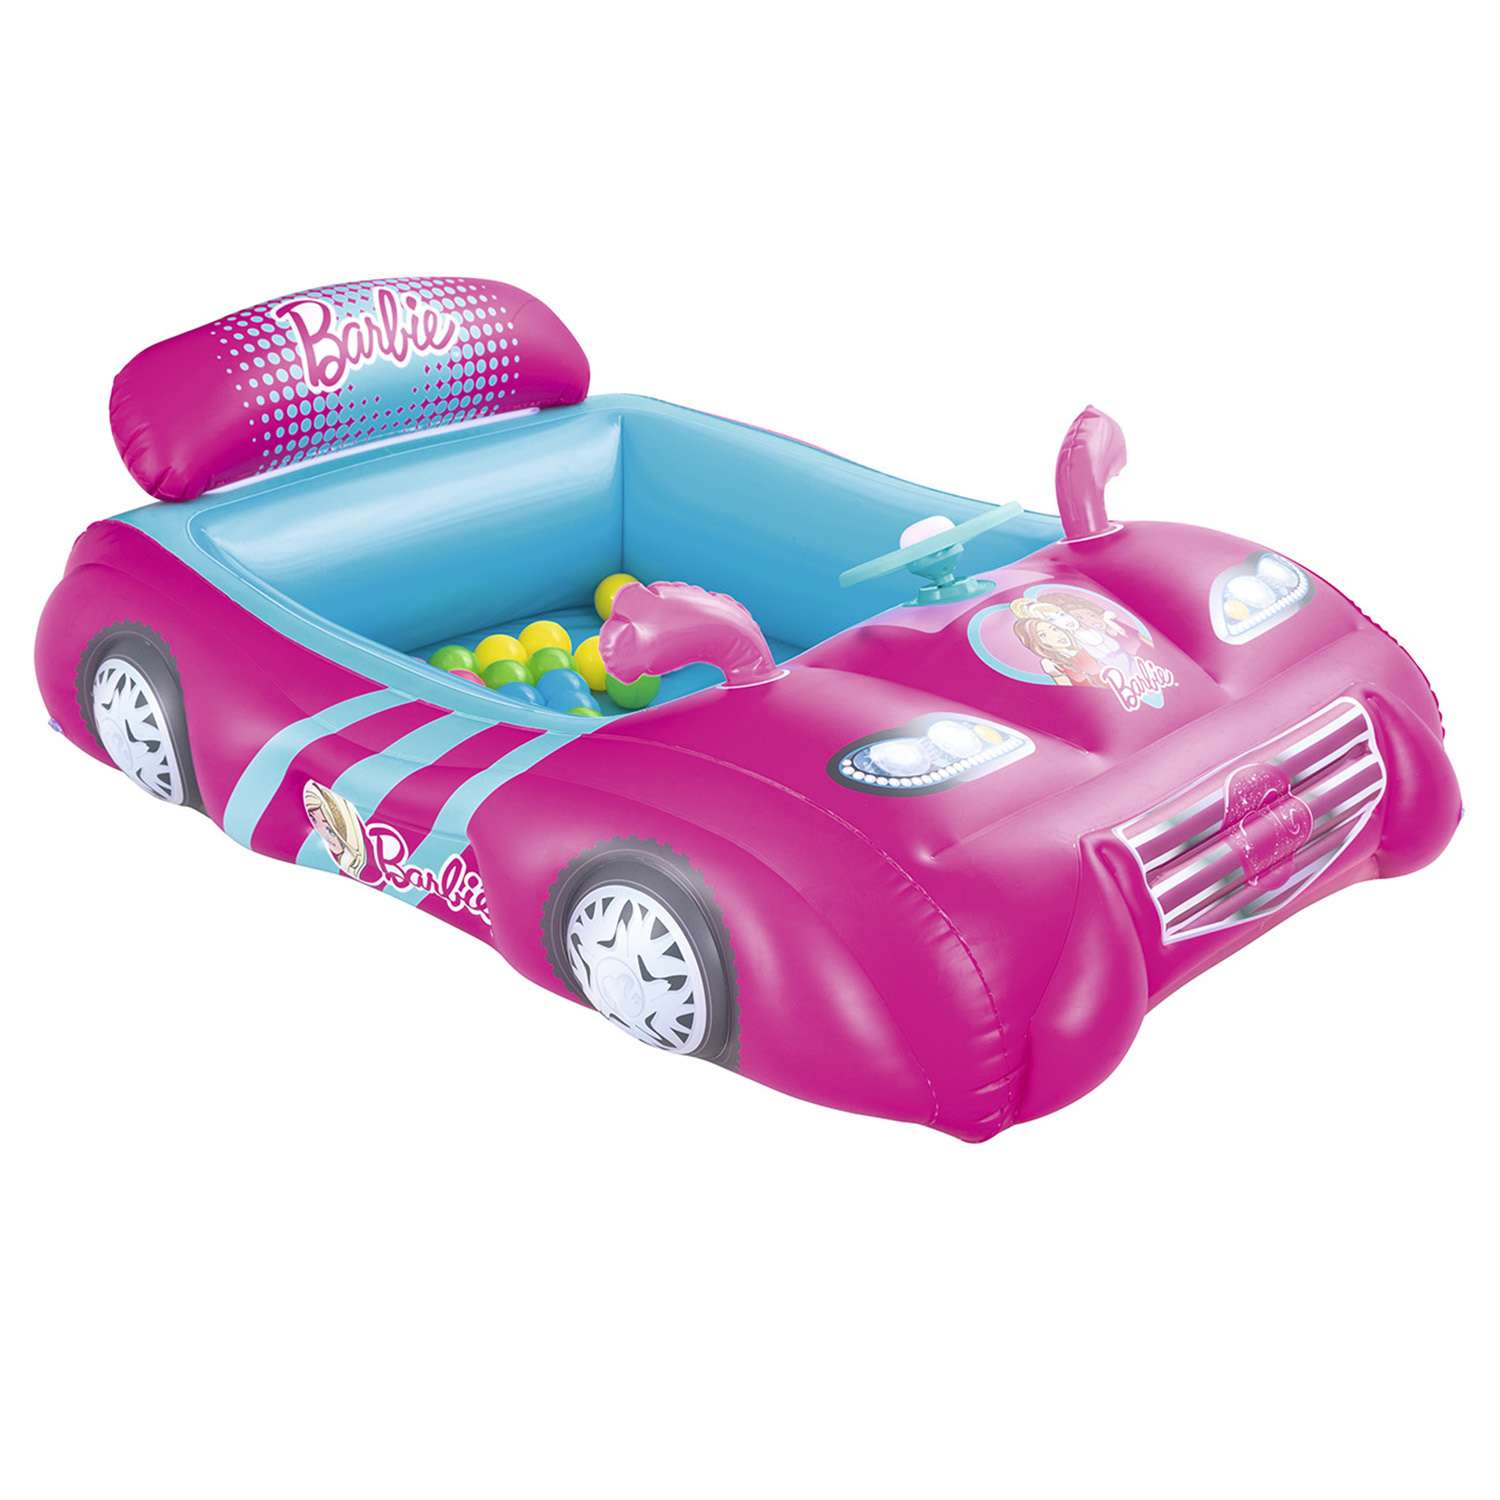 Центр игровой Bestway Barbie Машина с шариками 93207 - фото 5